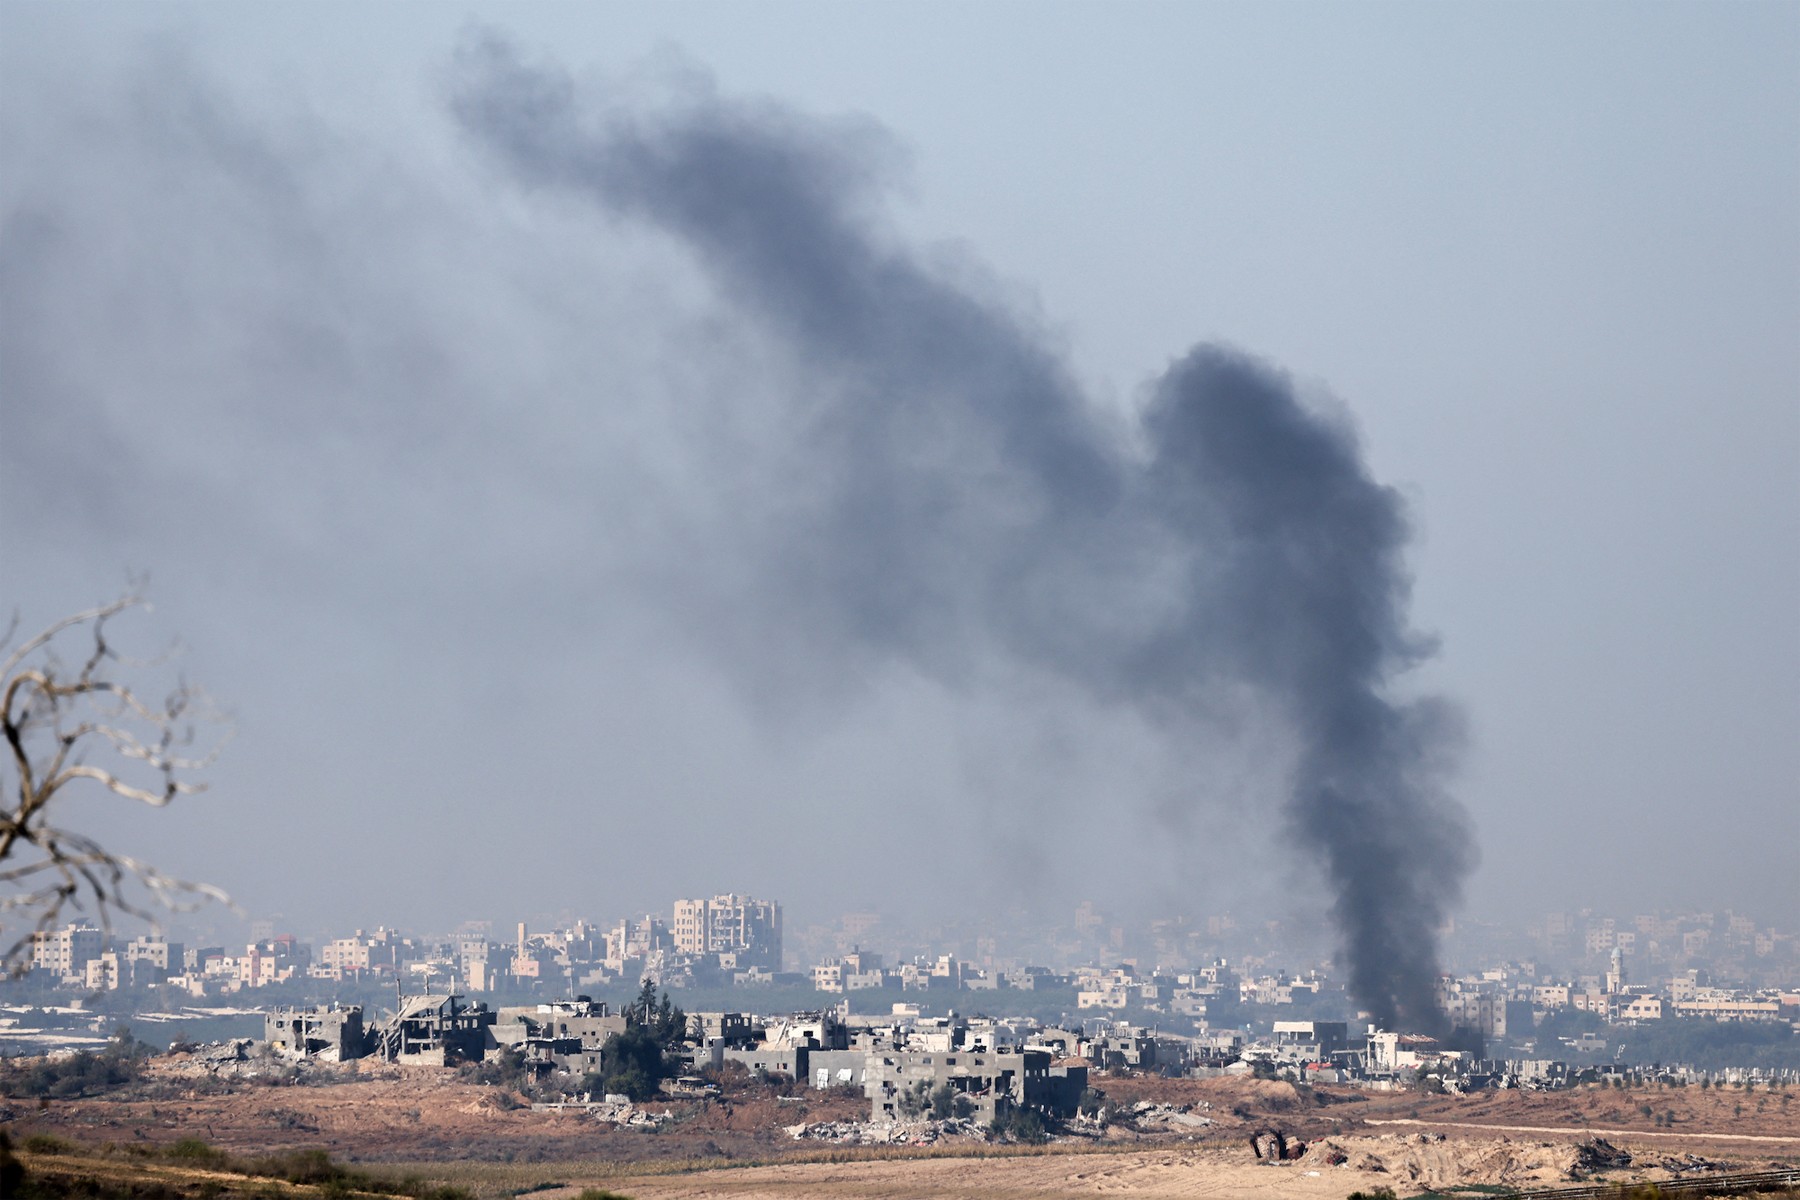 حماس اسرائیل و آمریکا را مسئول از سرگیری جنگ می داند